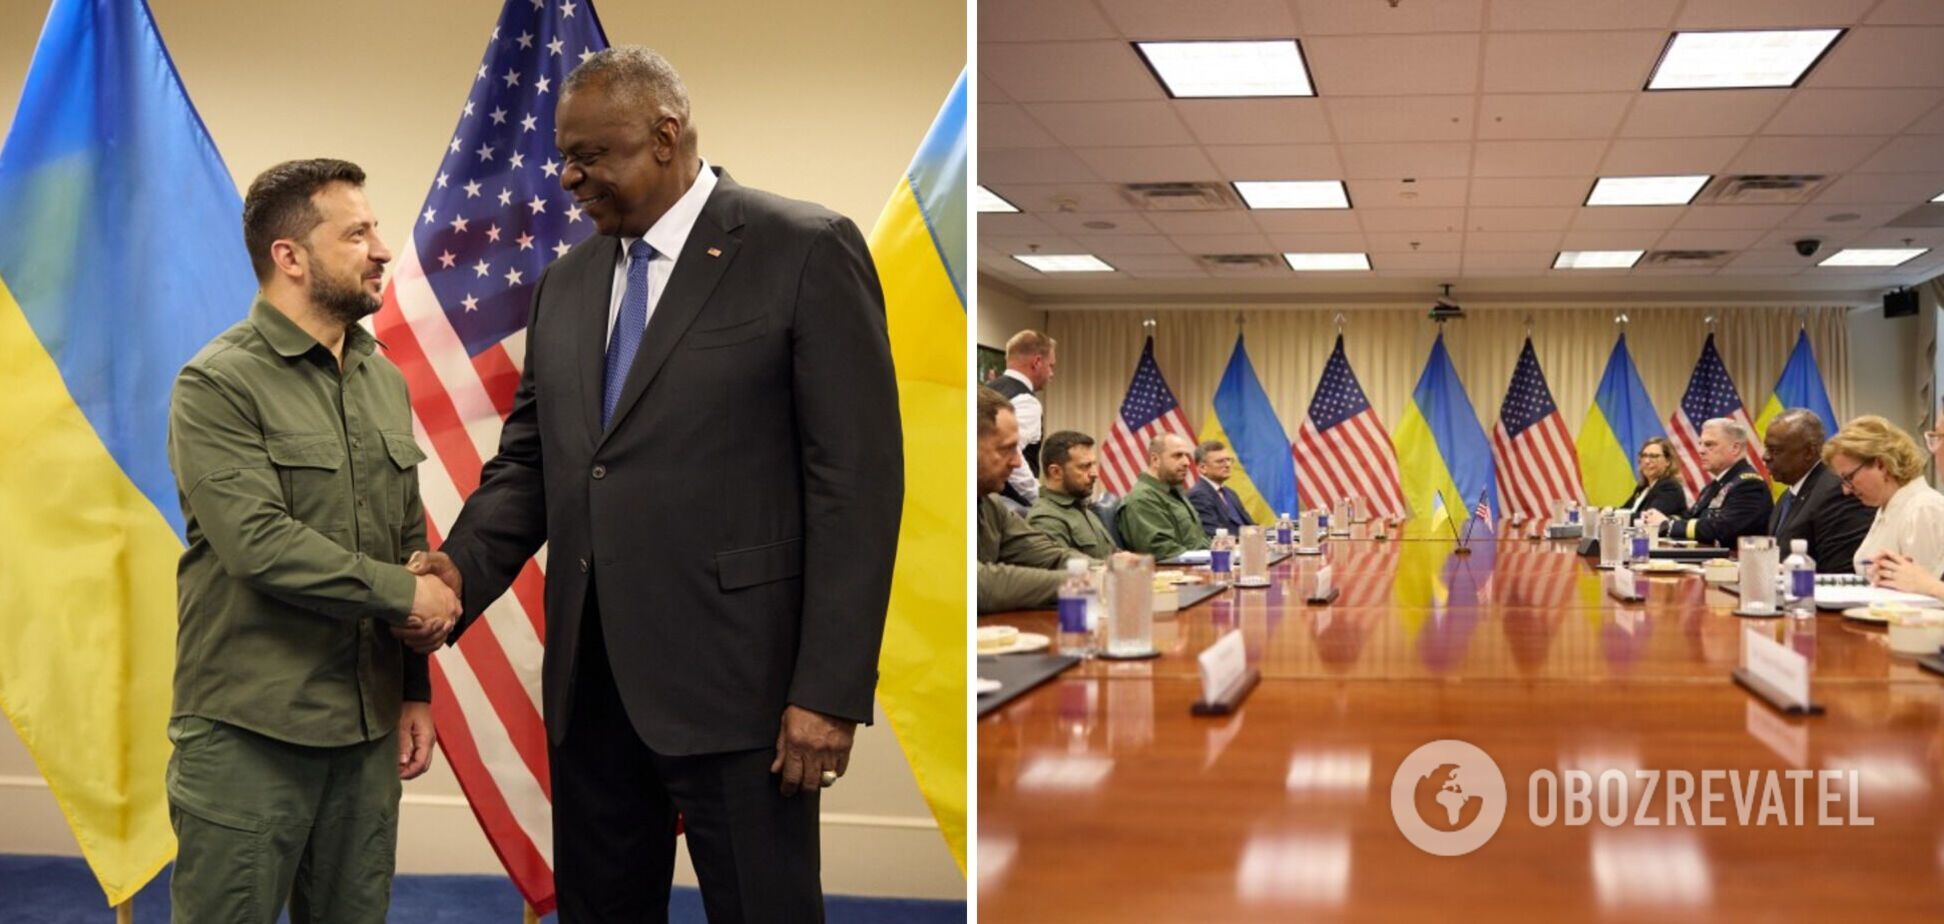 Обсудили поставки средств дальнего поражения: Зеленский в Пентагоне встретился с министром обороны США Остином. Фото